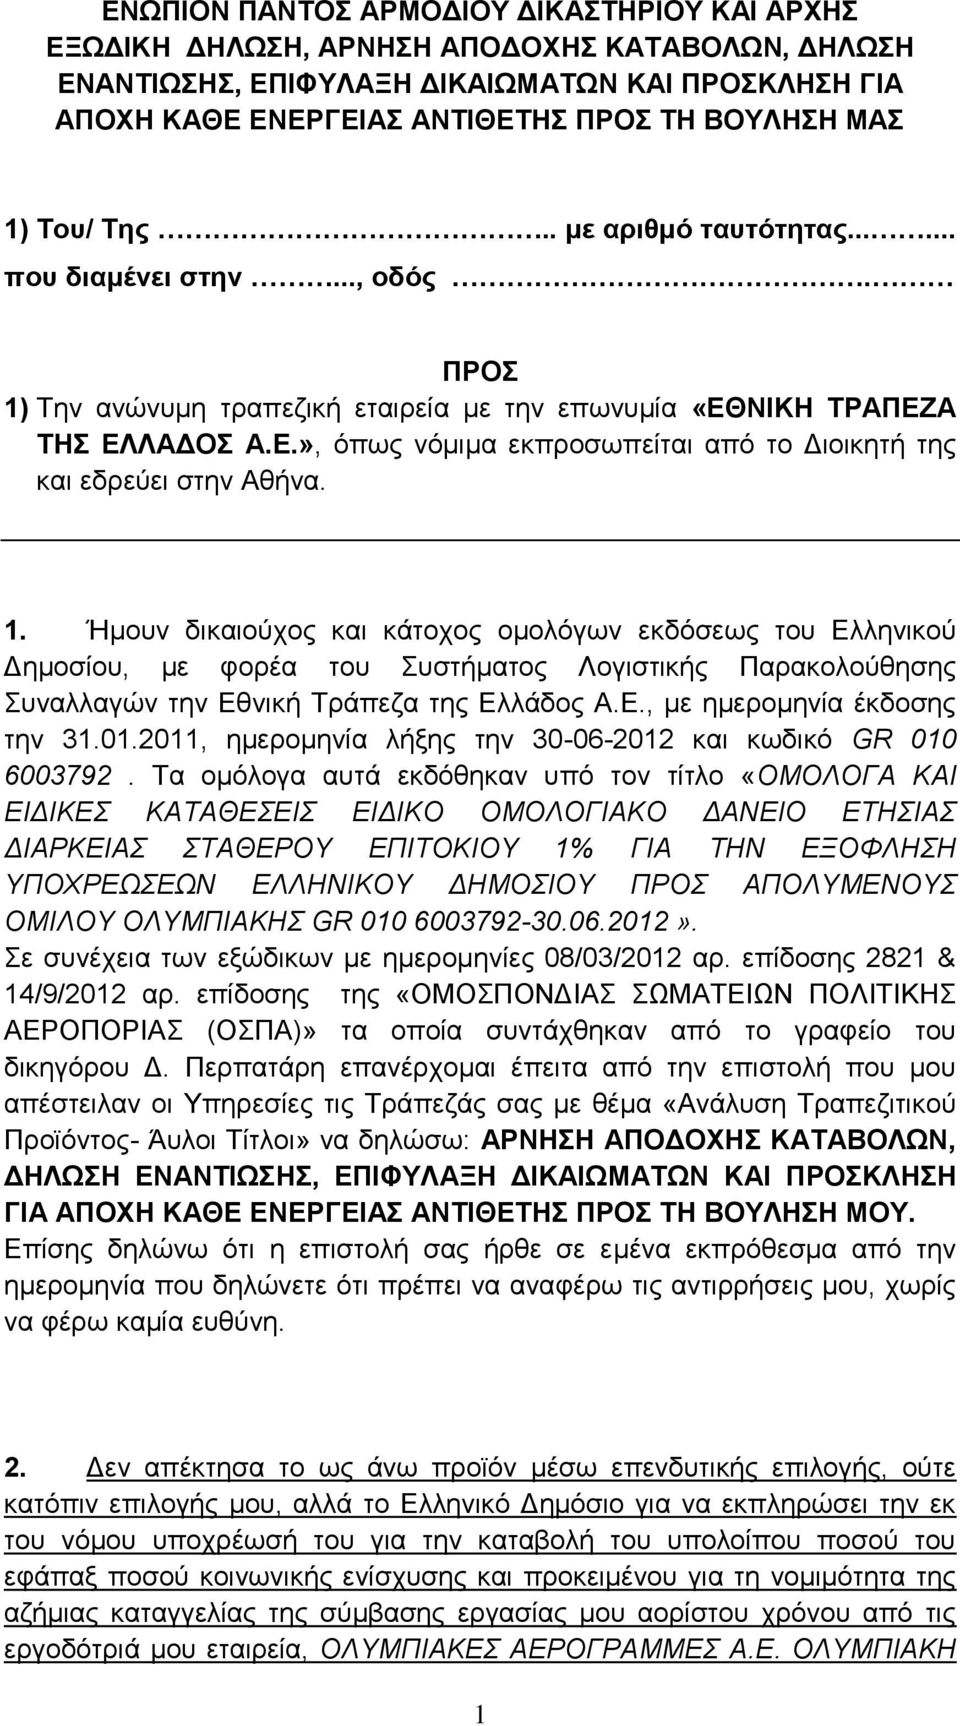 1. Ήμουν δικαιούχος και κάτοχος ομολόγων εκδόσεως του Ελληνικού Δημοσίου, με φορέα του Συστήματος Λογιστικής Παρακολούθησης Συναλλαγών την Εθνική Τράπεζα της Ελλάδος Α.Ε., με ημερομηνία έκδοσης την 31.